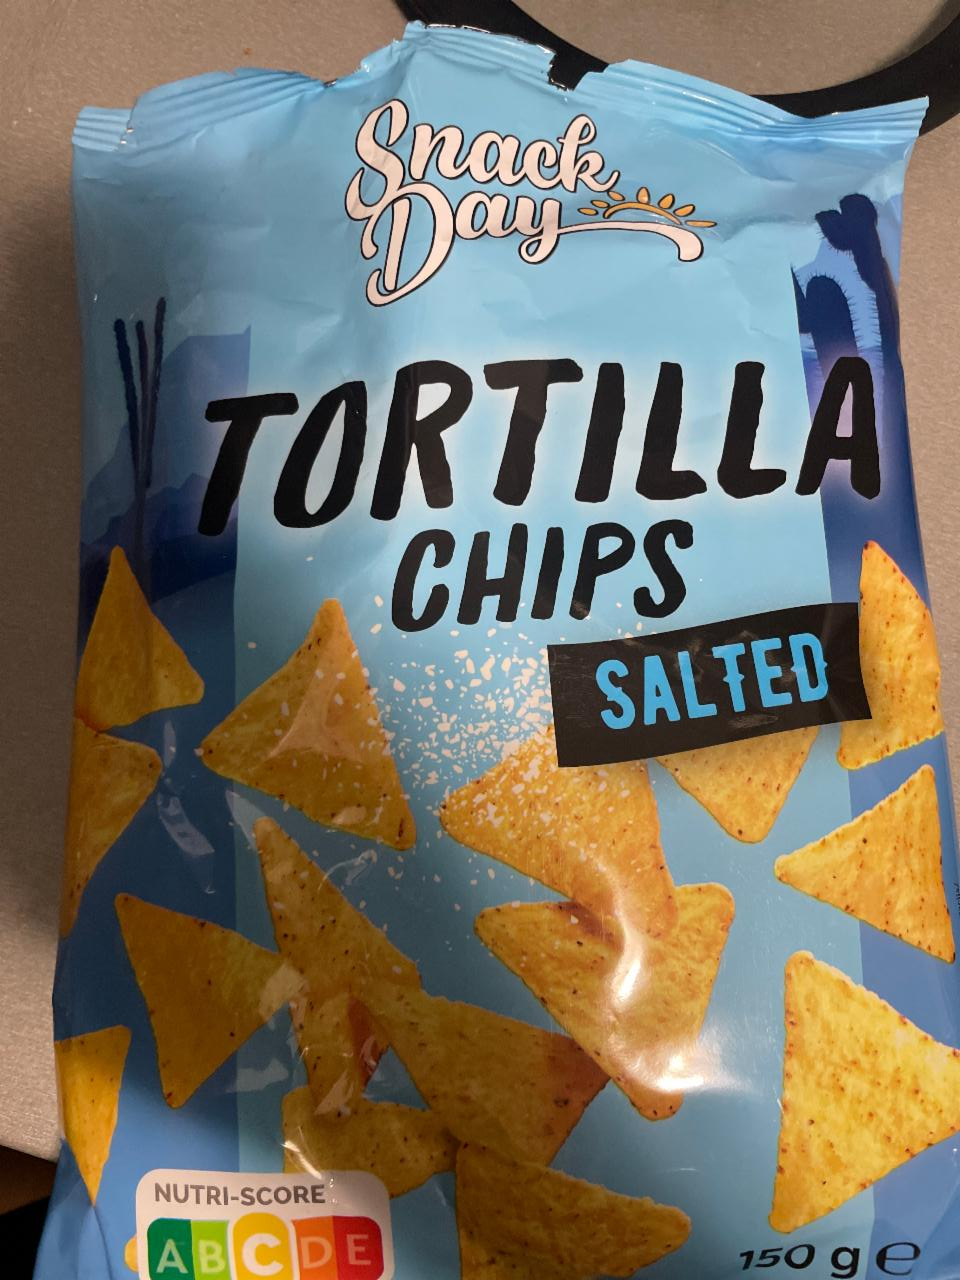 Tortilla chips salted Snack a hodnoty - nutriční kalorie, Day kJ